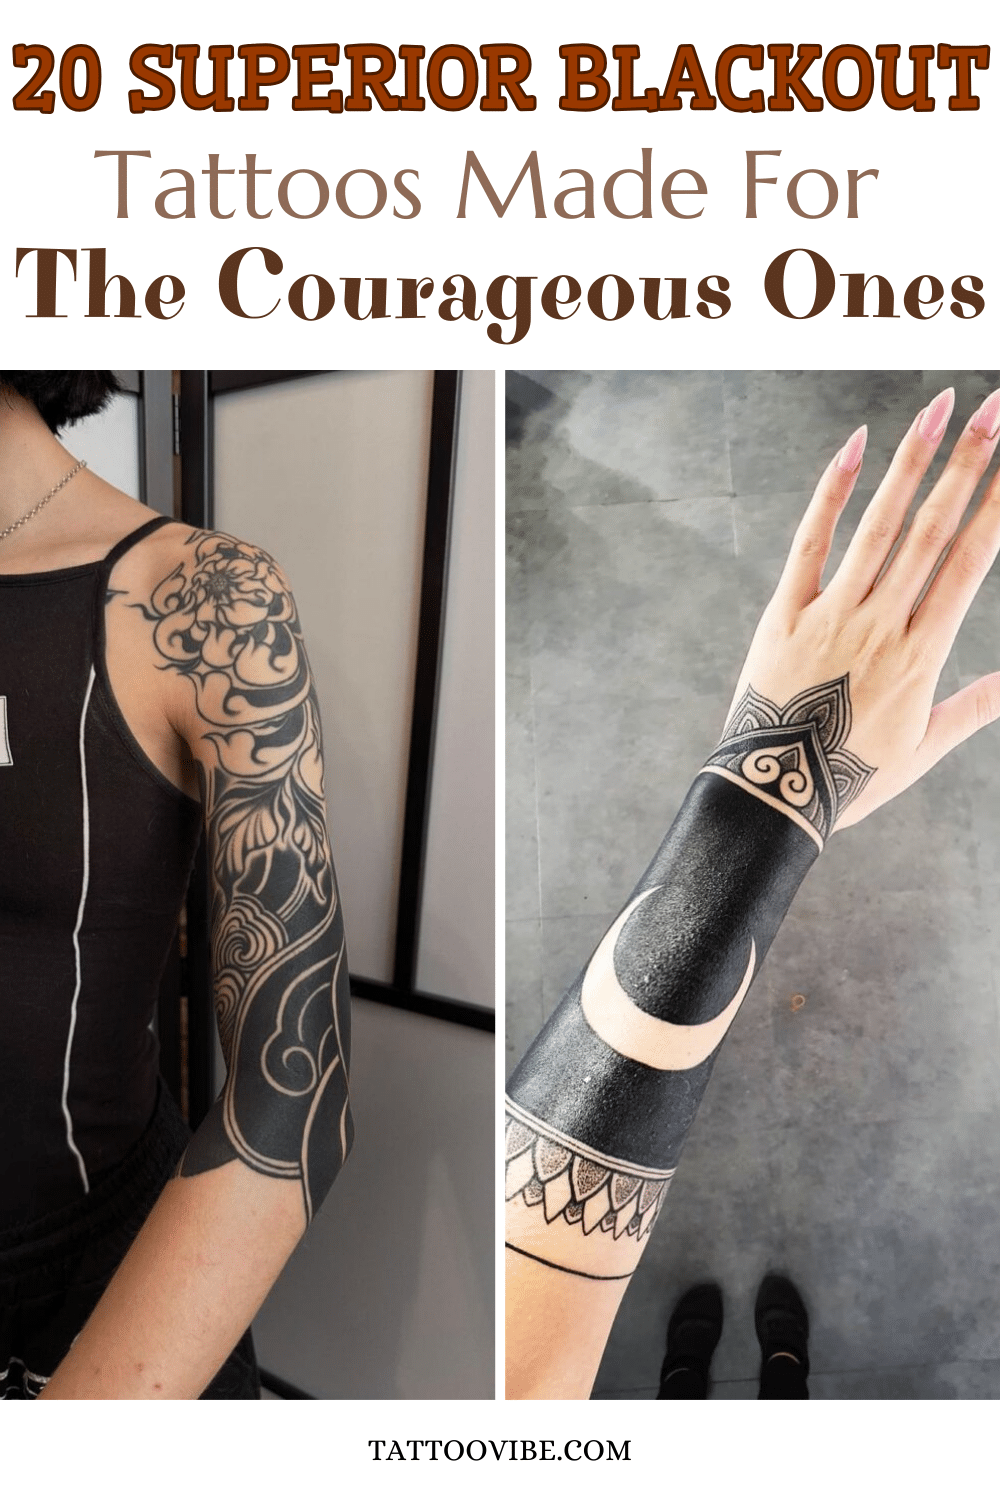 20 Tatuagens de blackout superiores feitas para os corajosos